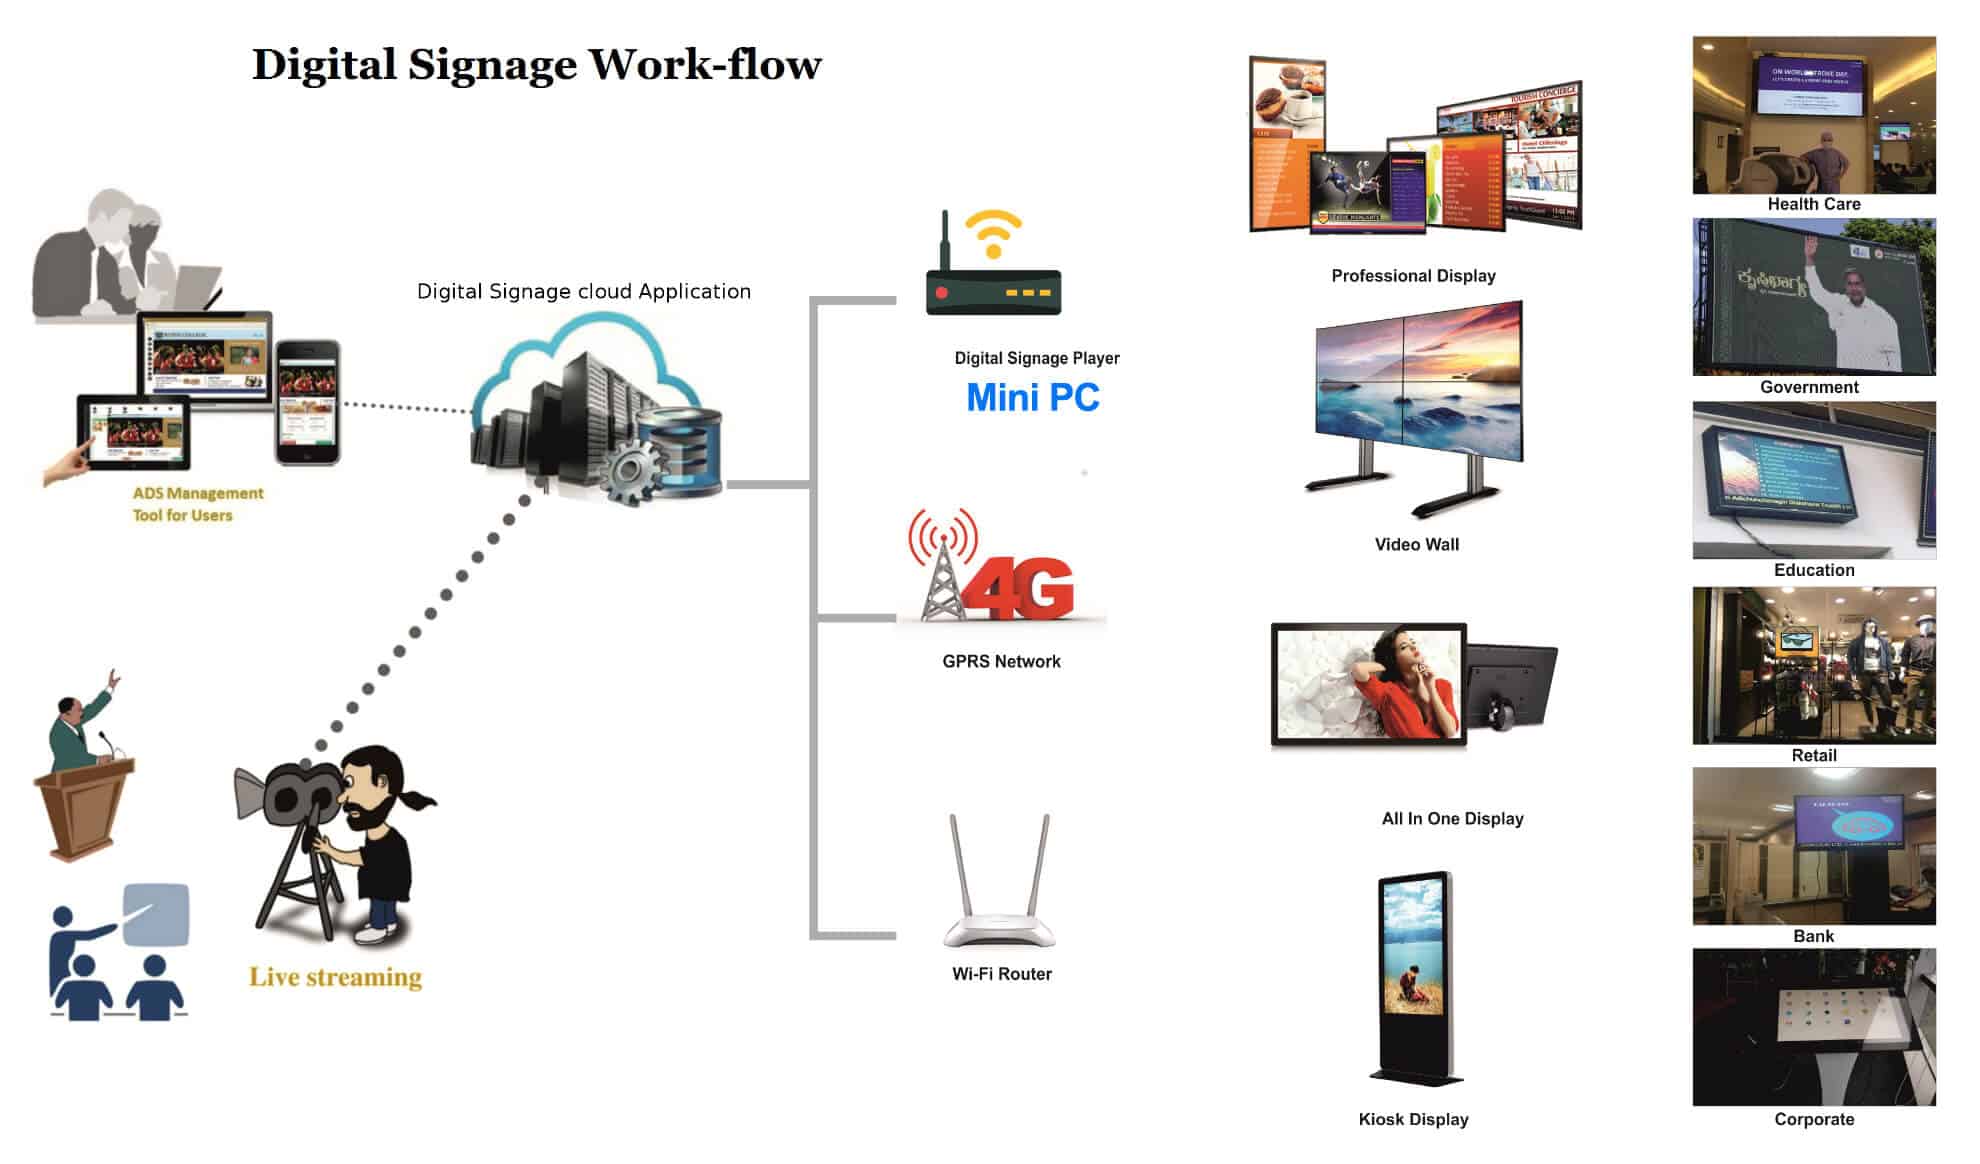 Digital signage work-flow